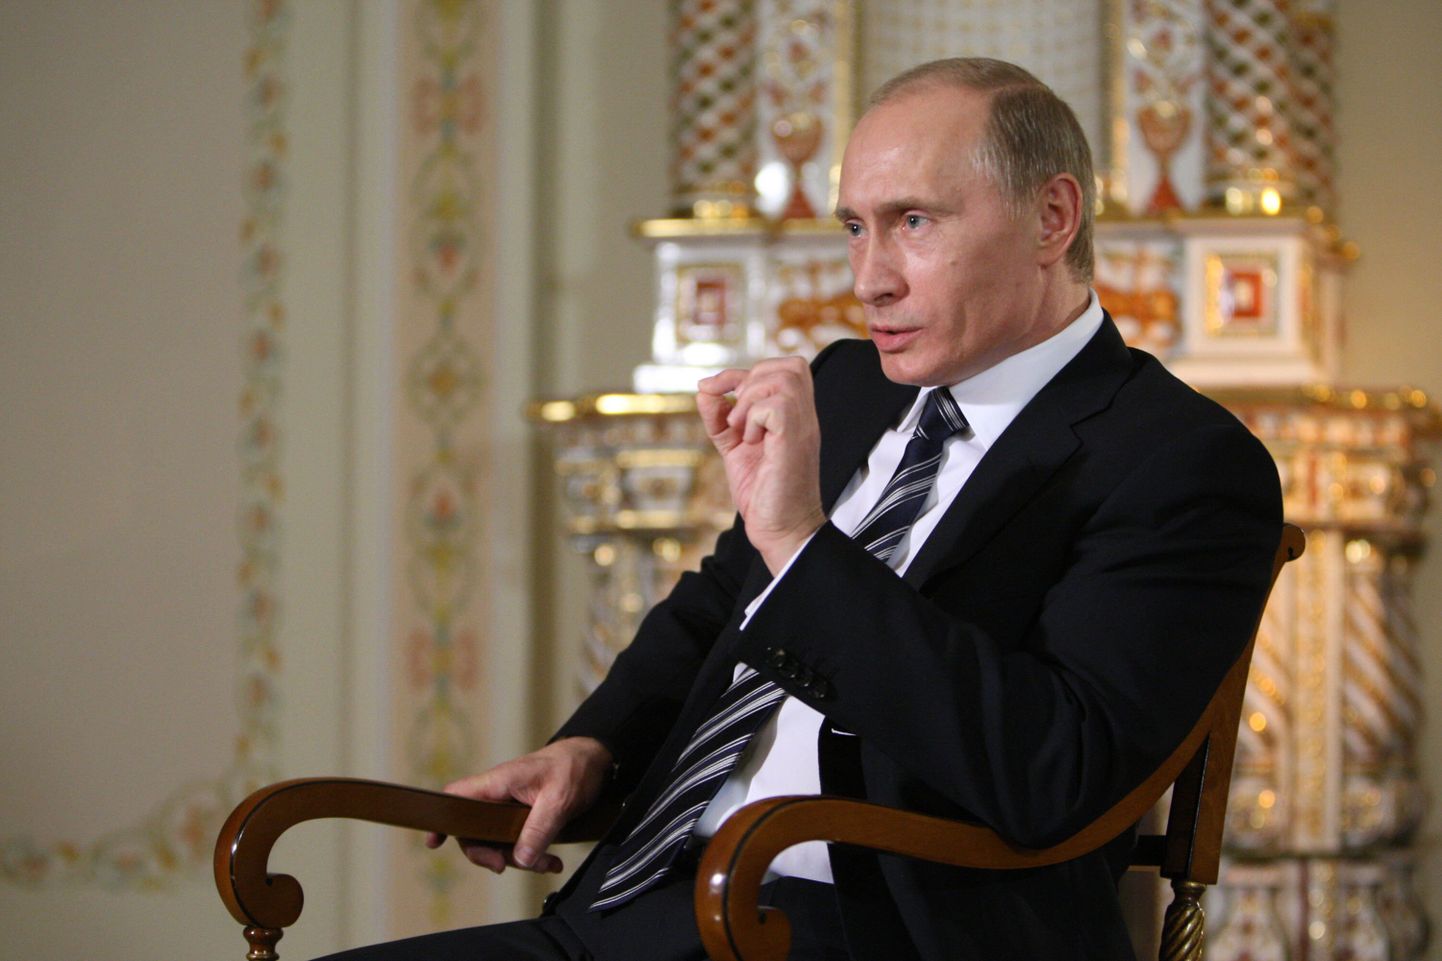 Venemaa peaminister Vladimir Putin andmas intervjuud Saksa telekanalile ARD oma Novo-Ogarjovo residentsis.